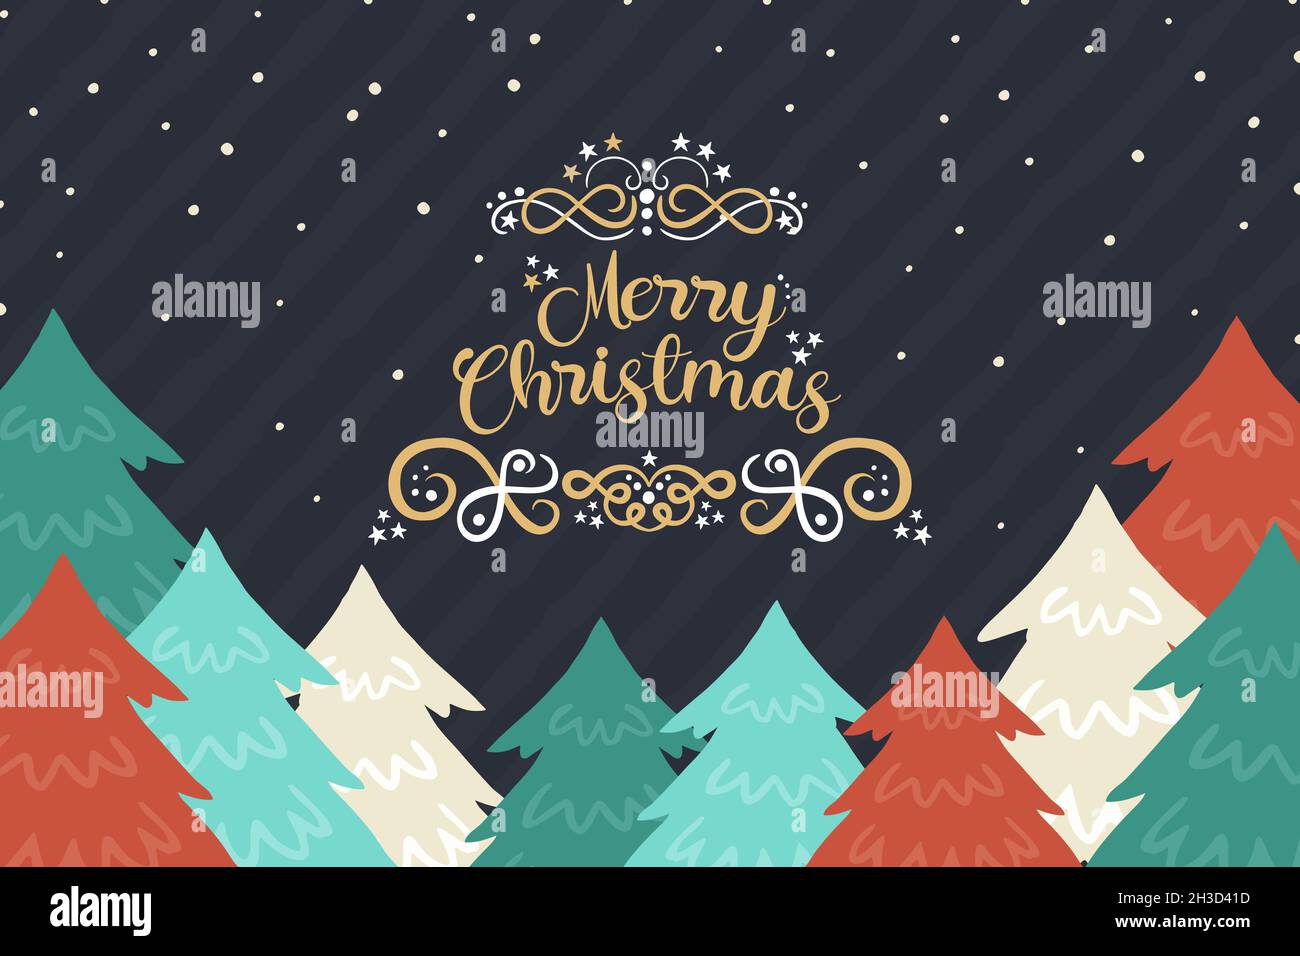 Frohe Weihnachten Grußkarte Illustration von bunten Kiefernwald in handgezeichneten Stil. Weihnachten Cartoon-Design für Jahreszeiten Grüße oder Party invita Stockfoto